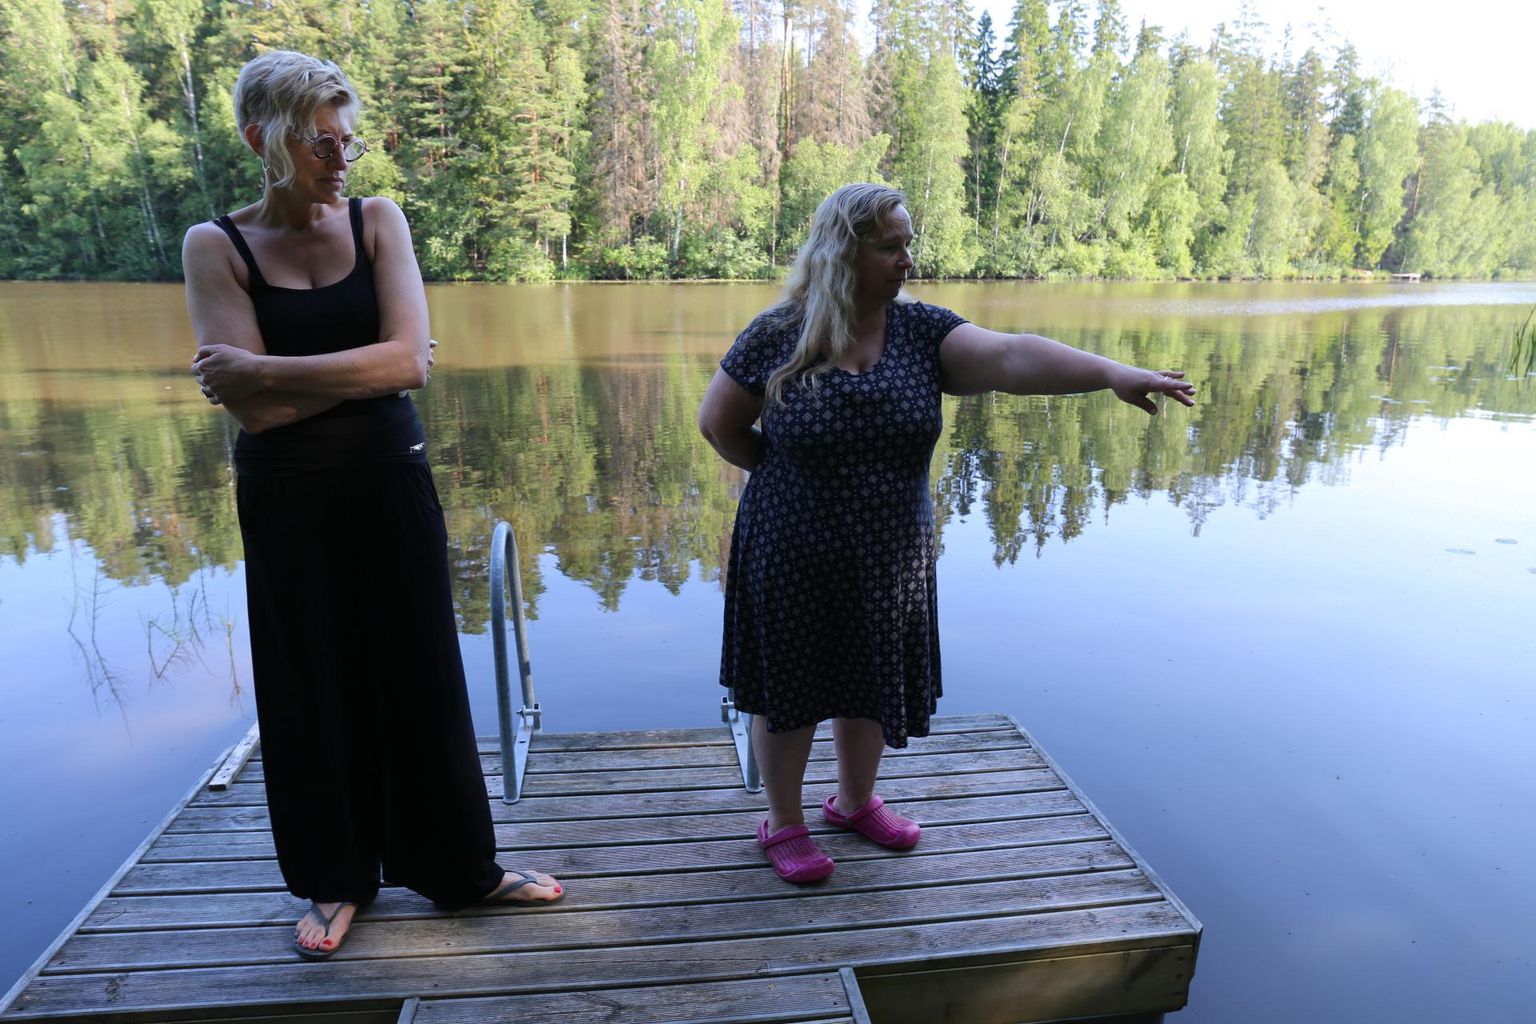 Hüüdre järve ääres elavad Kätlin Koit (vasakul) ja Maarika Jalava pole sellist kalade suremust varem näinud.